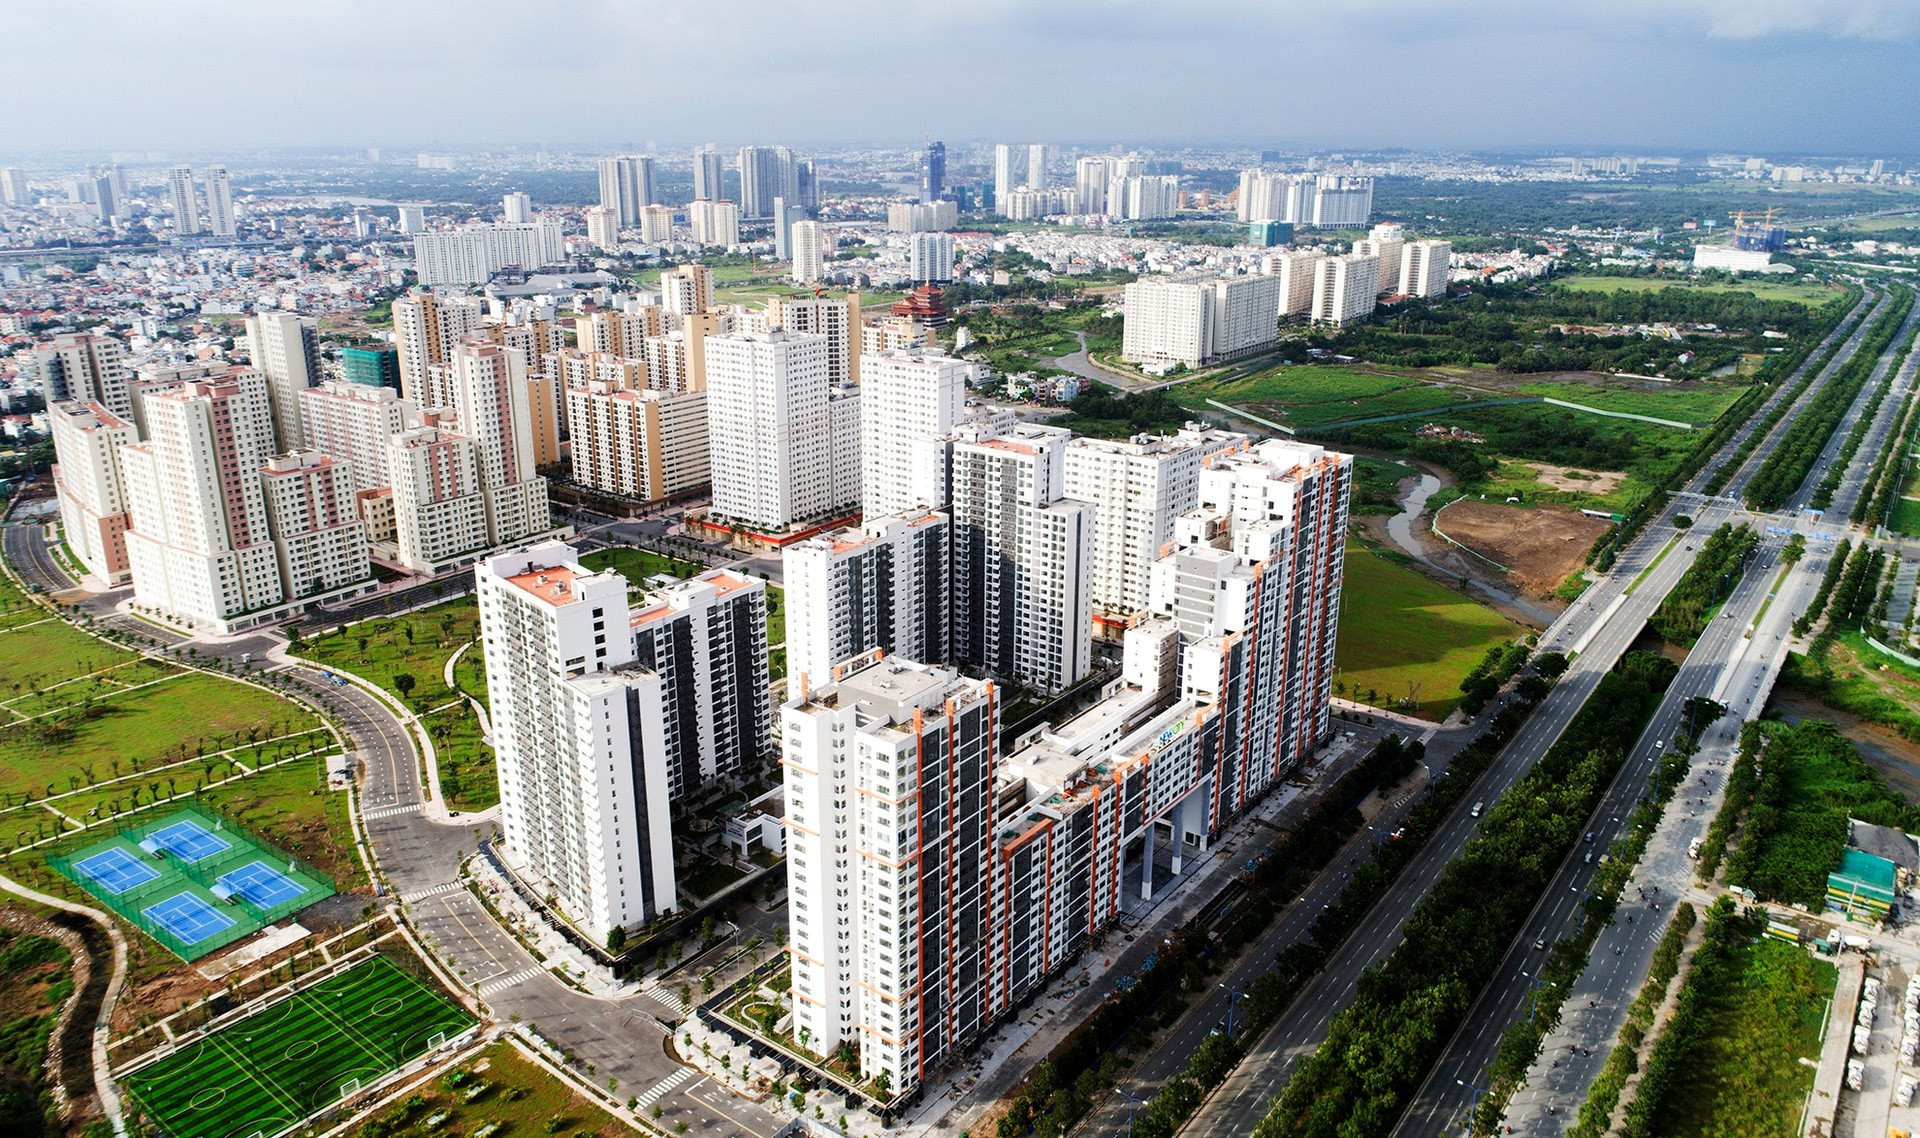 Bất động sản tuần qua: Đề xuất chuyển dự án tái định cư thành nhà ở xã hội; Him Lam, Phú Mỹ, HBC có diễn biến đáng chú ý